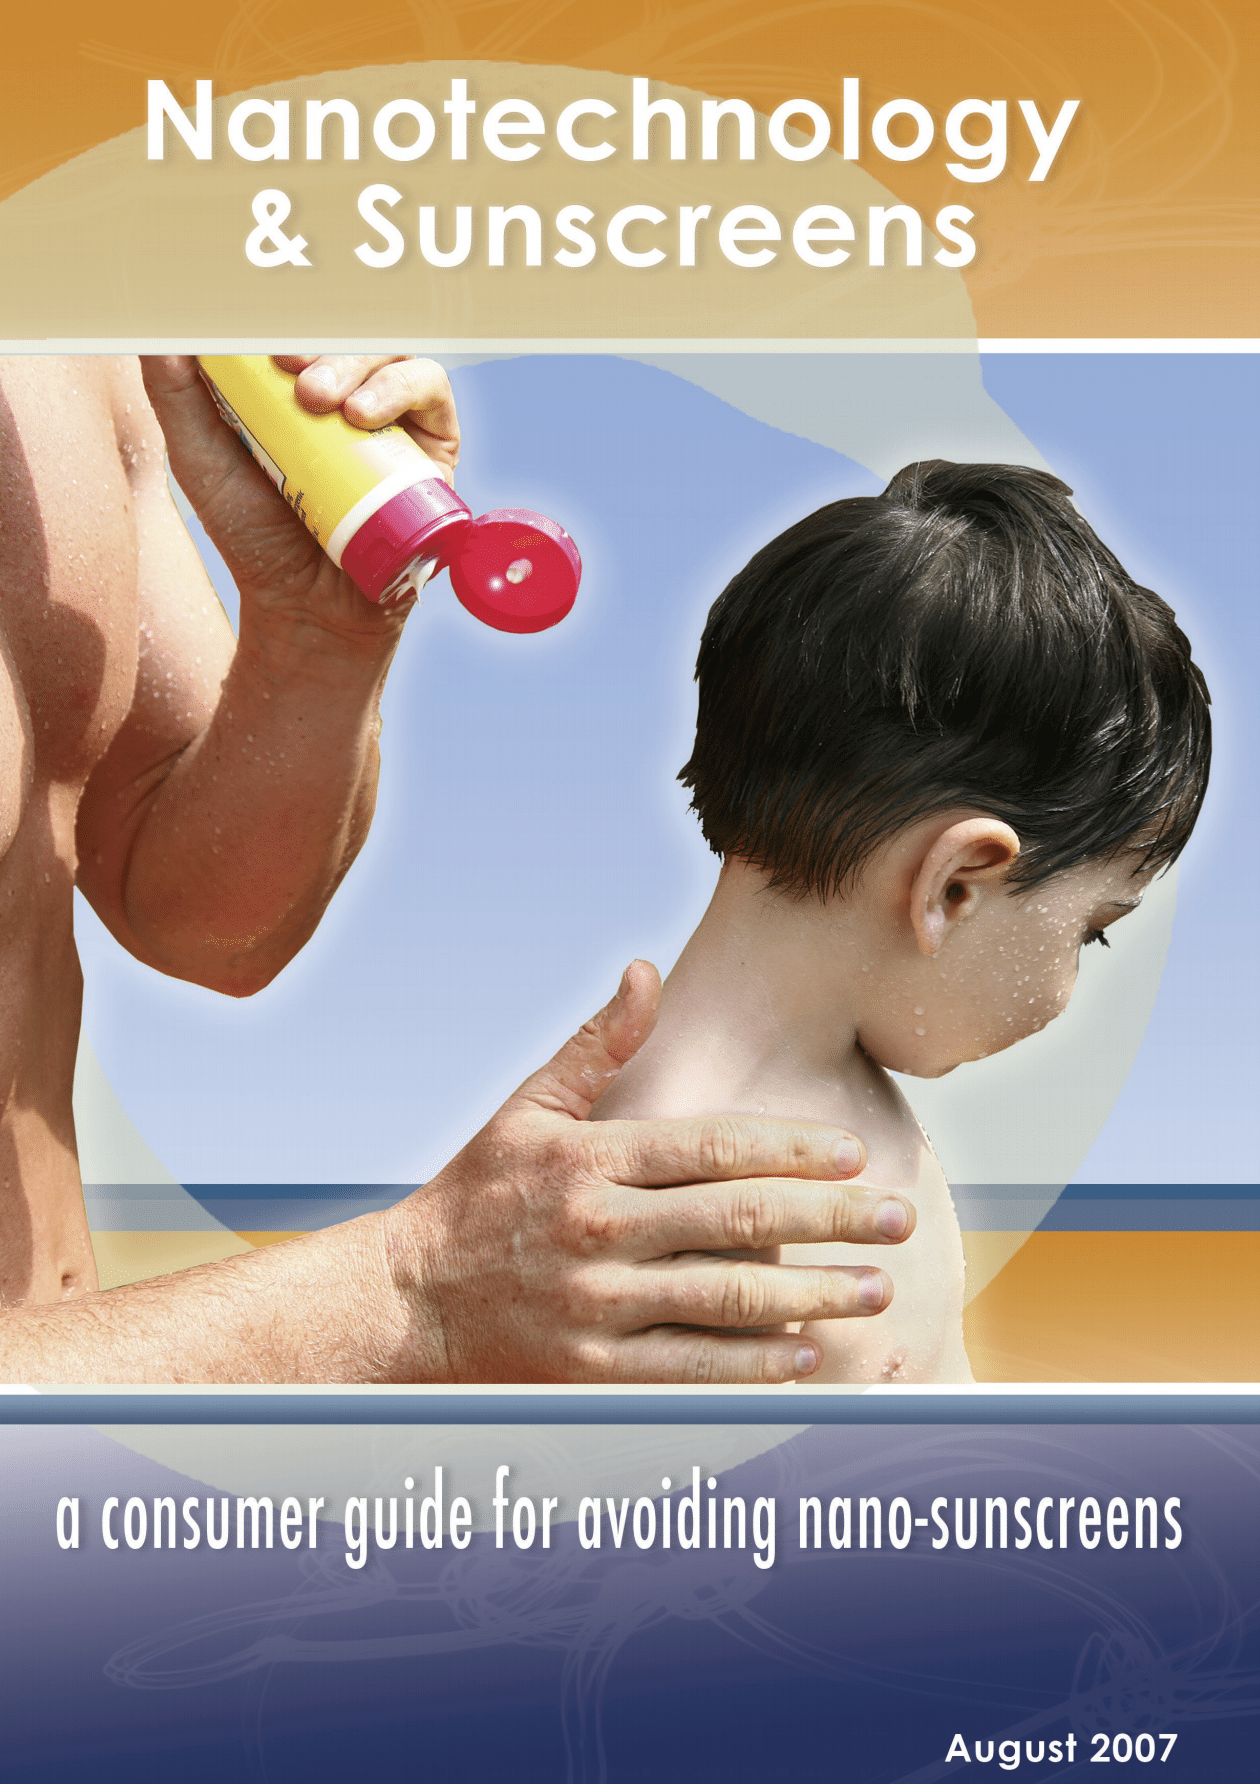 Nanotechnology & sunscreens: A consumer guide for avoiding nanosunscreens